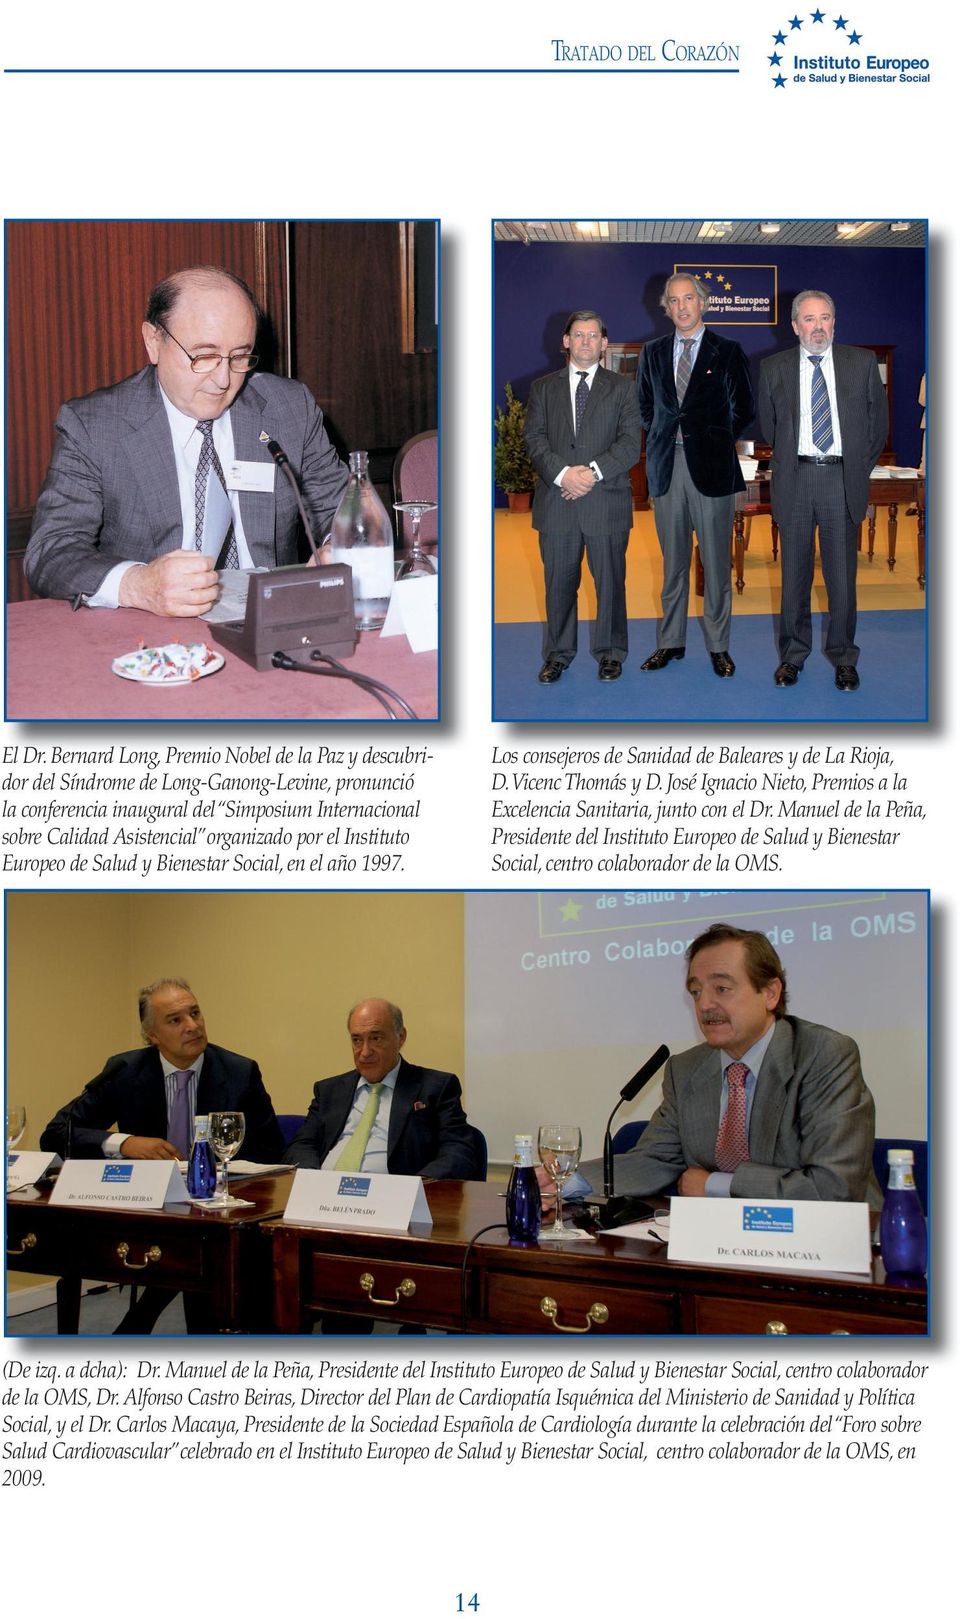 Instituto Europeo de Salud y Bienestar Social, en el año 1997. Los consejeros de Sanidad de Baleares y de La Rioja, D. Vicenc Thomás y D.